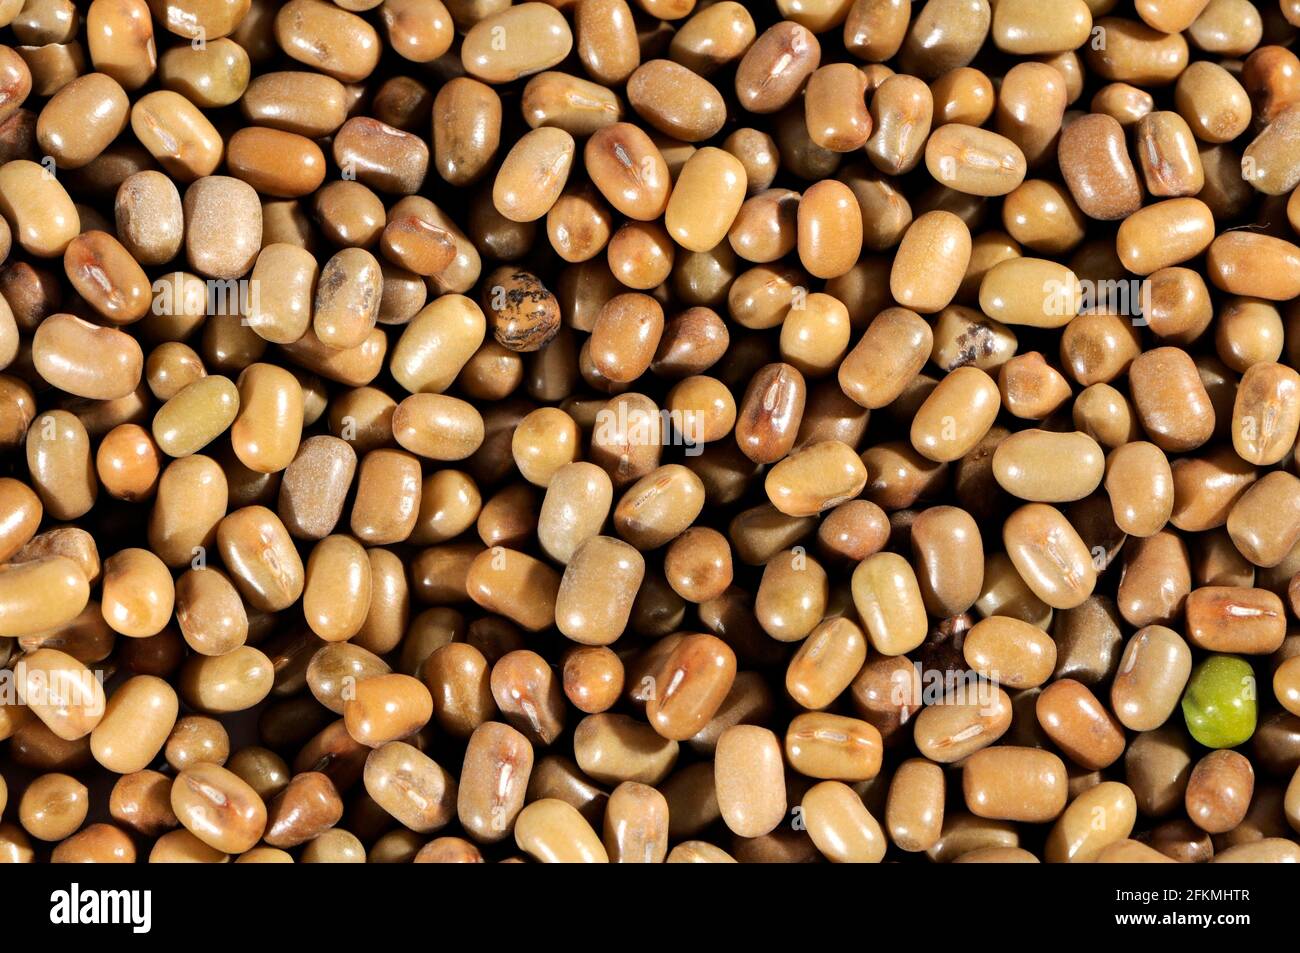 Moth beans (Vigna aconitifolia) Stock Photo